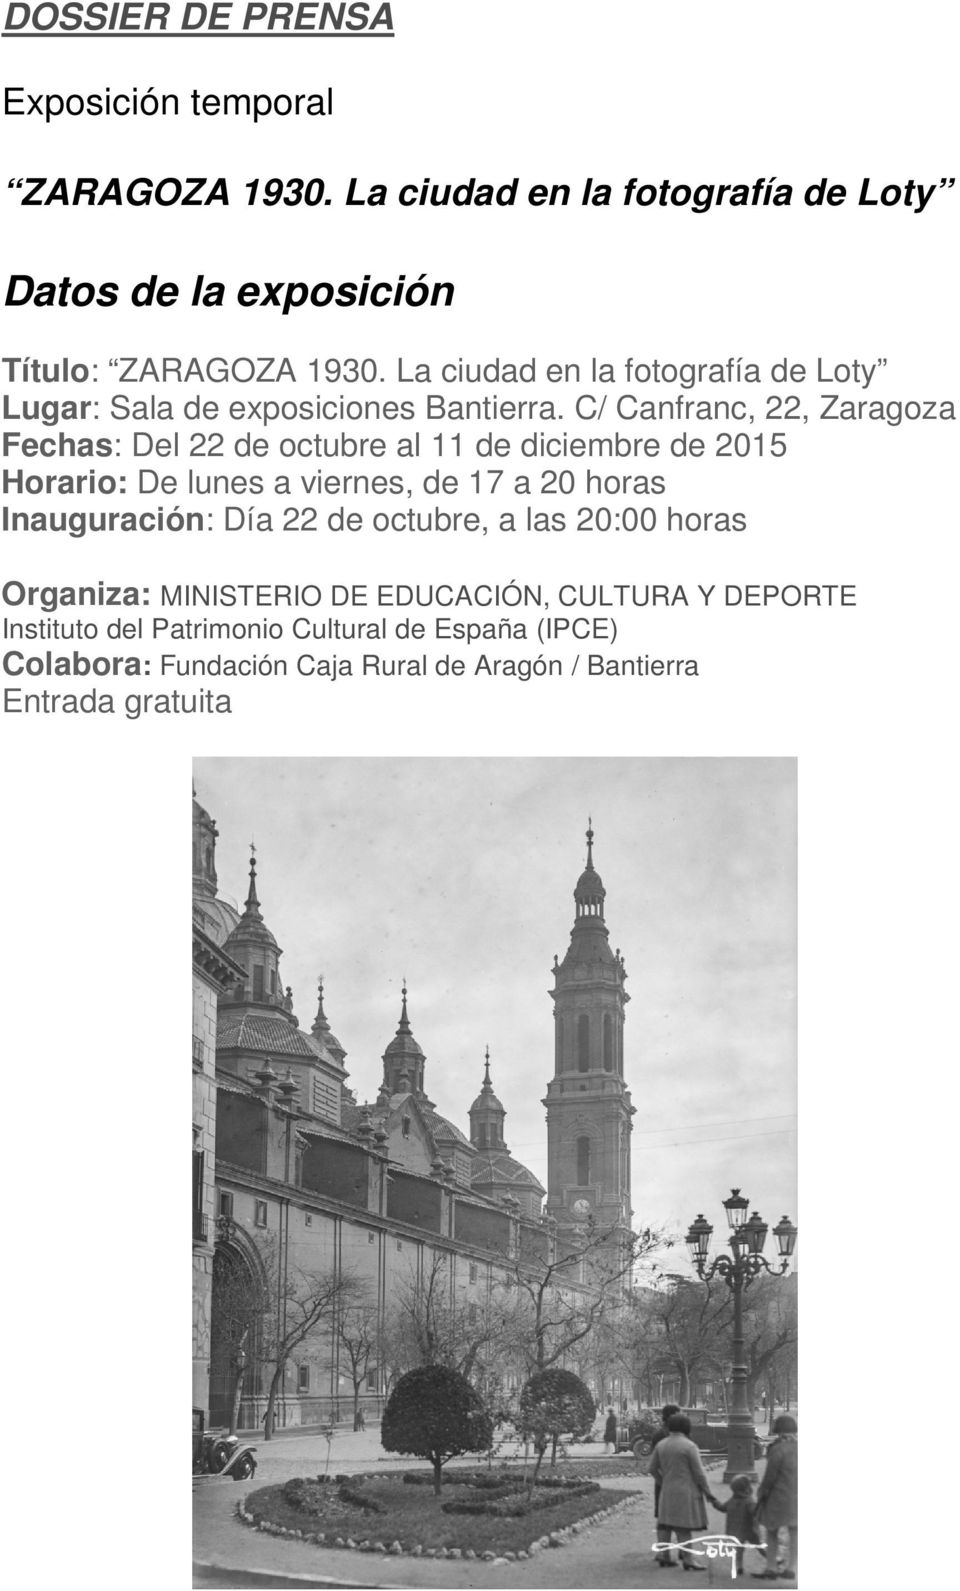 C/ Canfranc, 22, Zaragoza Fechas: Del 22 de octubre al 11 de diciembre de 2015 Horario: De lunes a viernes, de 17 a 20 horas Inauguración: